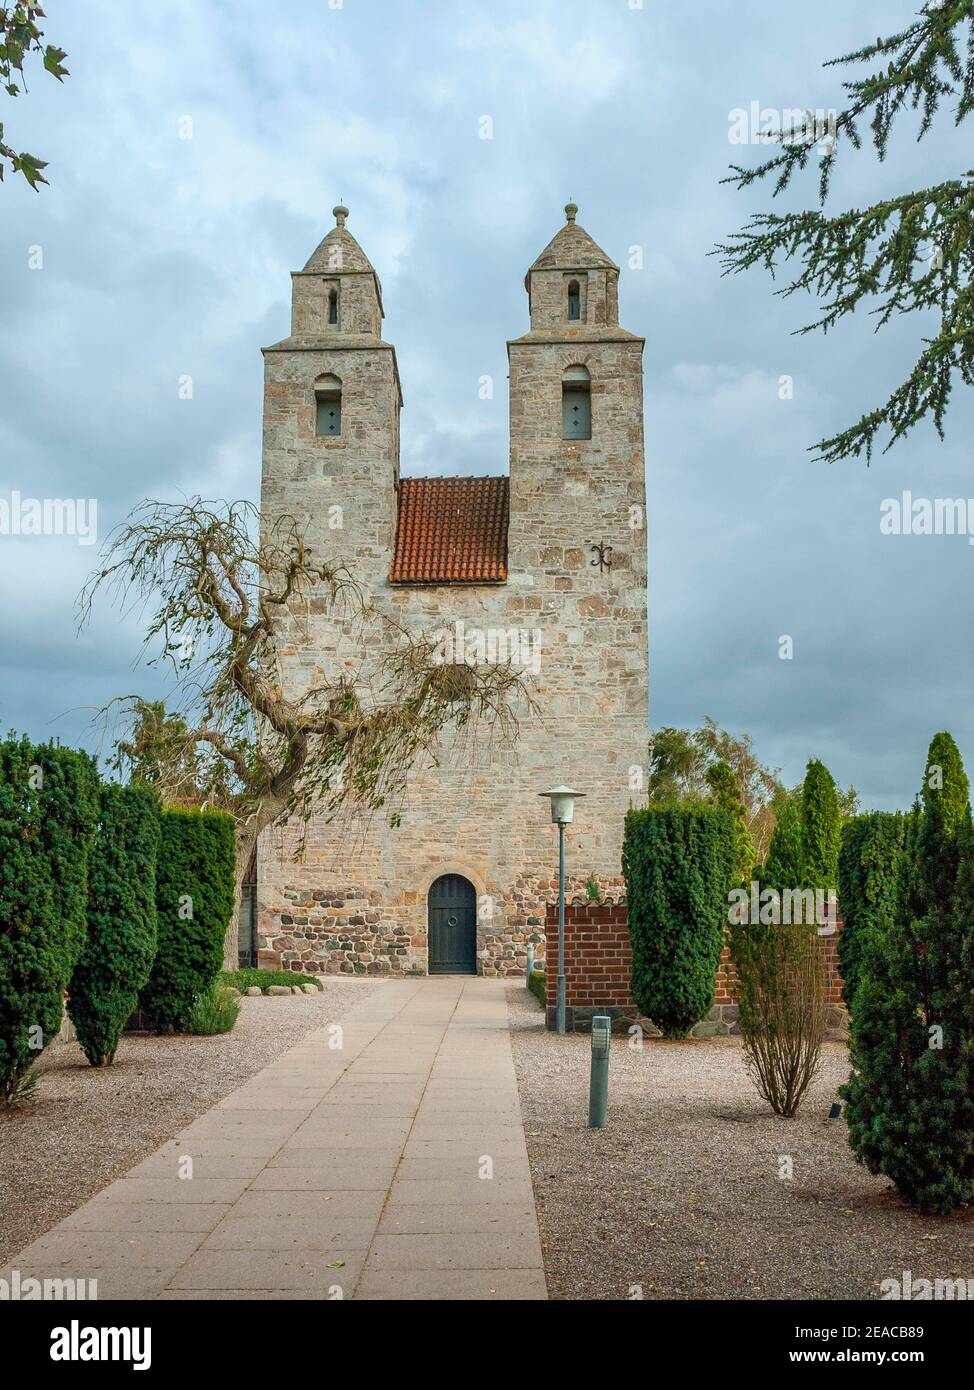 Dinamarca, isla de Zelanda, Holbaek-Tveje Merløse, Tveje Merløse Kirke, rara iglesia con dos torres de 1140, probablemente construida por Asser Rig, el padre de Absalon. Absalon fue obispo de Roskilde y arzobispo de Lund. Foto de stock